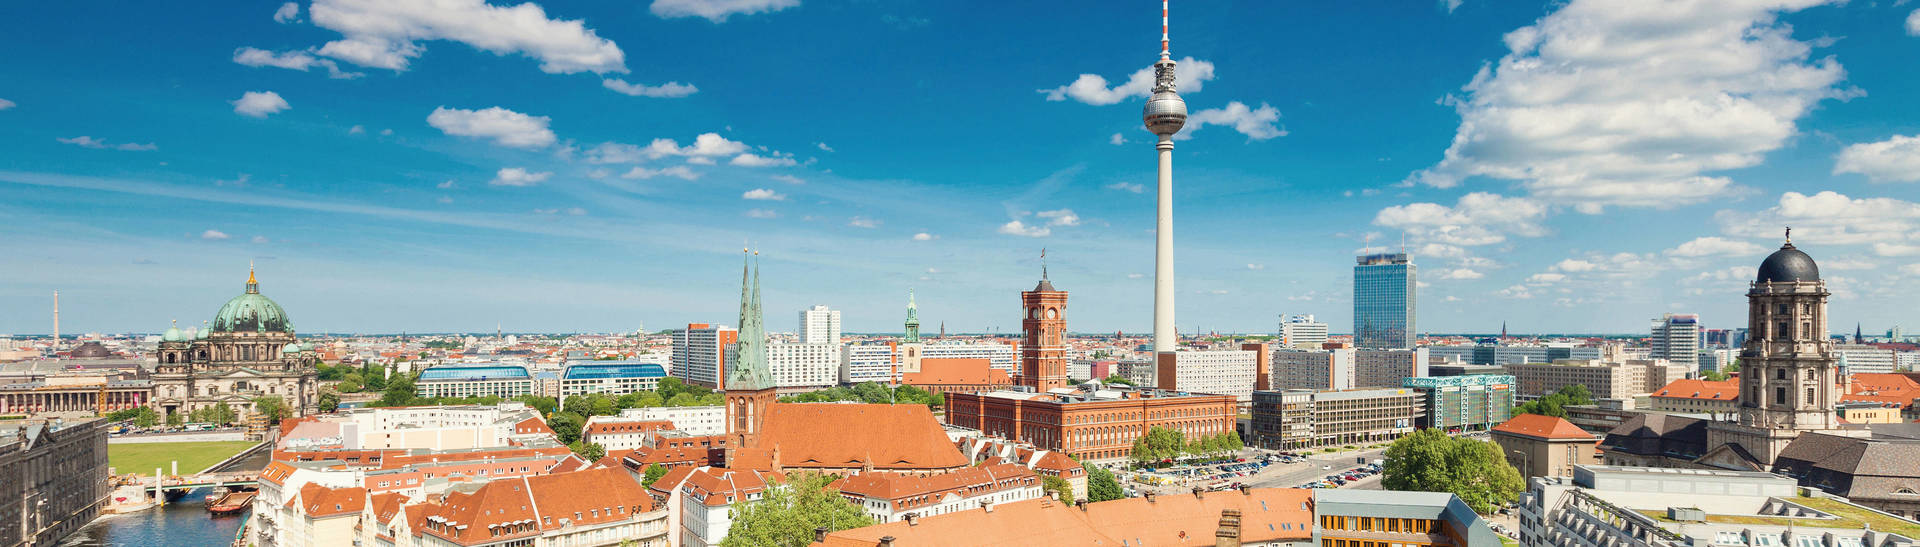 Facade - H4 Hotel Berlin Alexanderplatz  - Official website